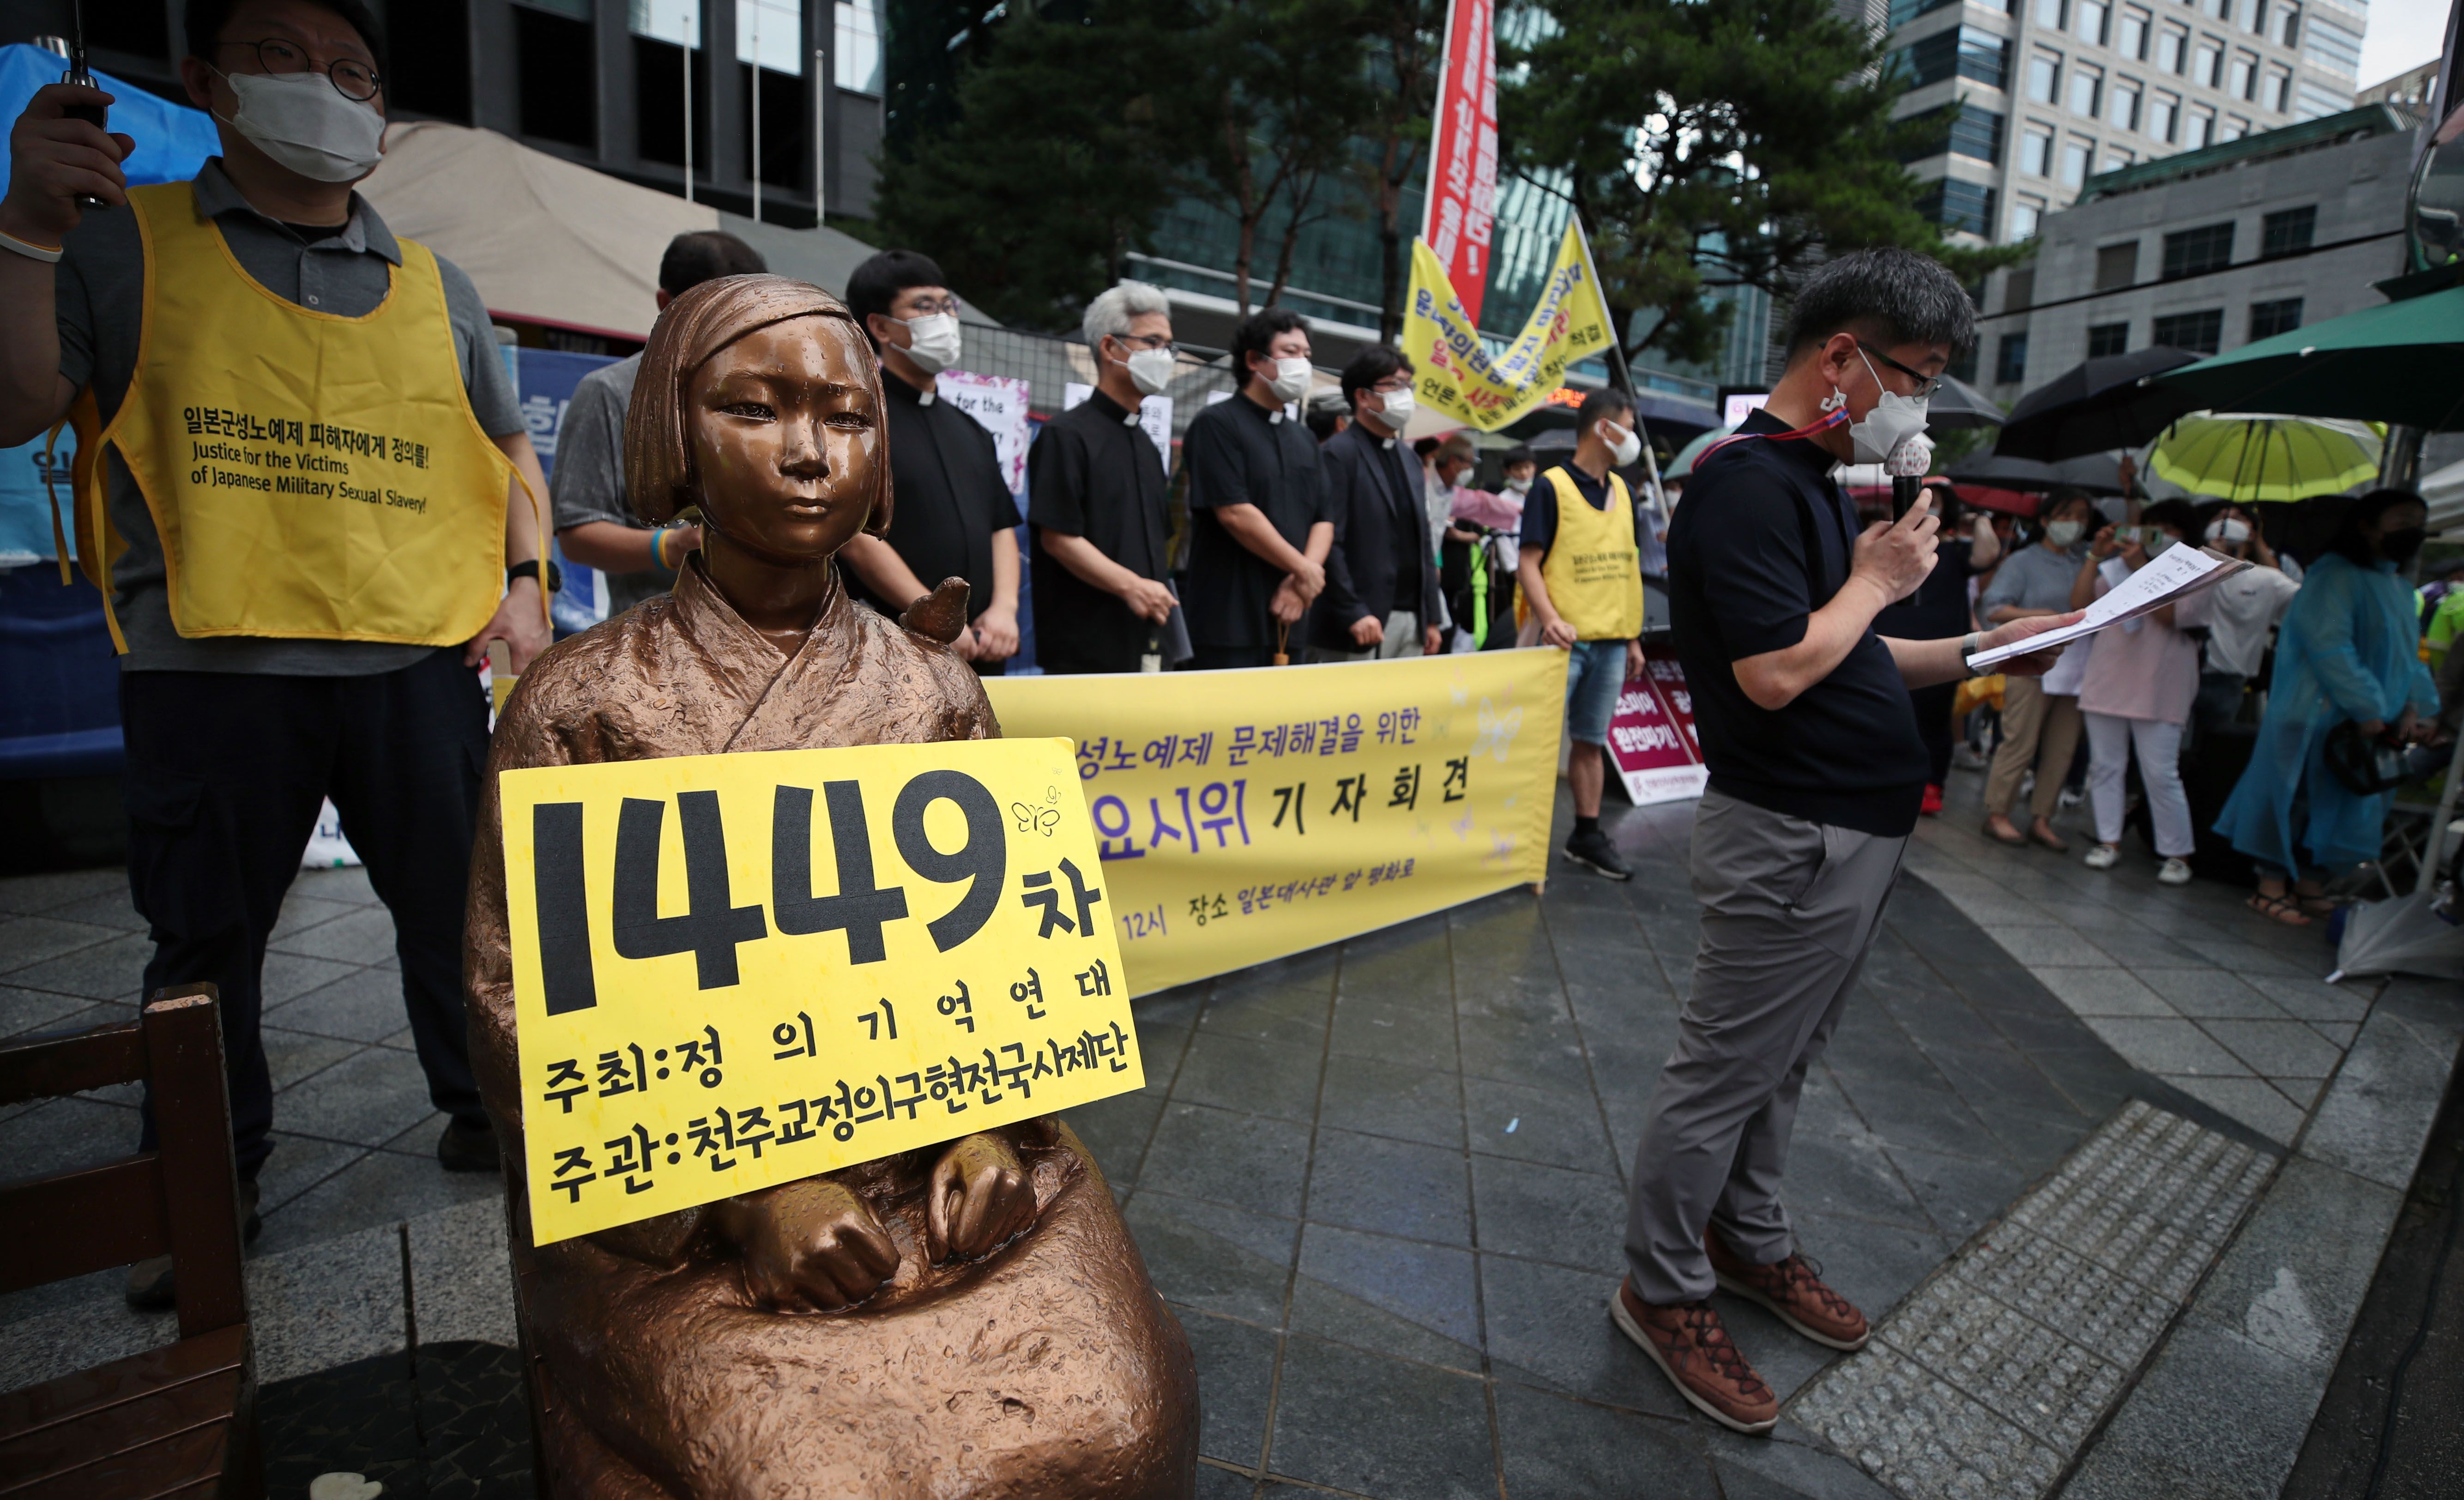 めっきり退潮、韓国・慰安婦支援団体の「水曜集会」　尹美香事件で失った世論の支持、集会の内容も迷走気味